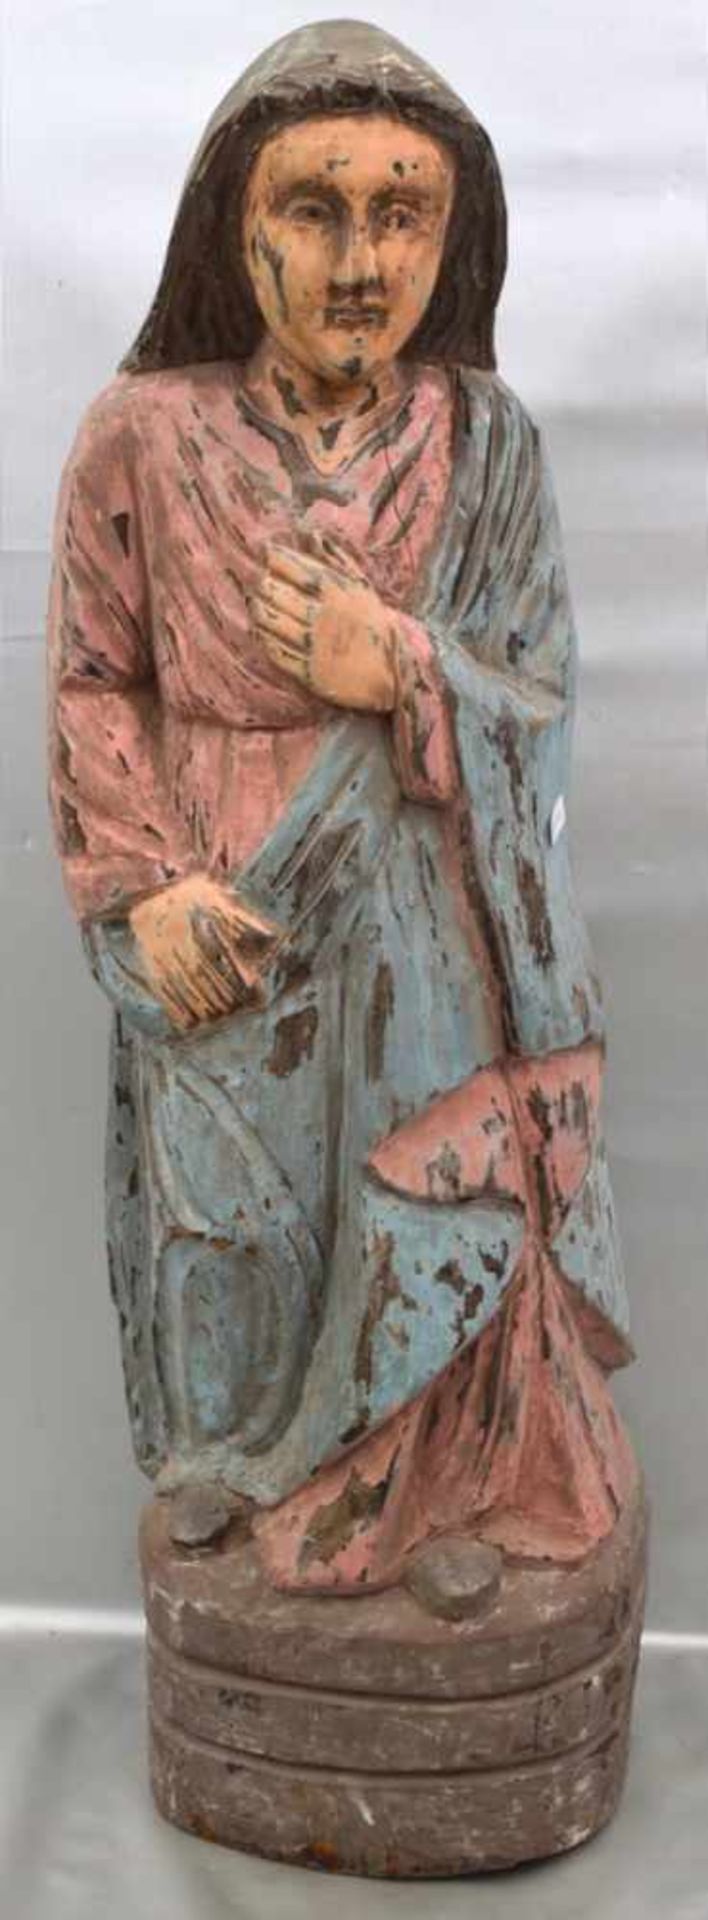 Mutter GottesHartholz, geschnitzt, auf Sockel stehend, bunt bemalt, H 61 cm